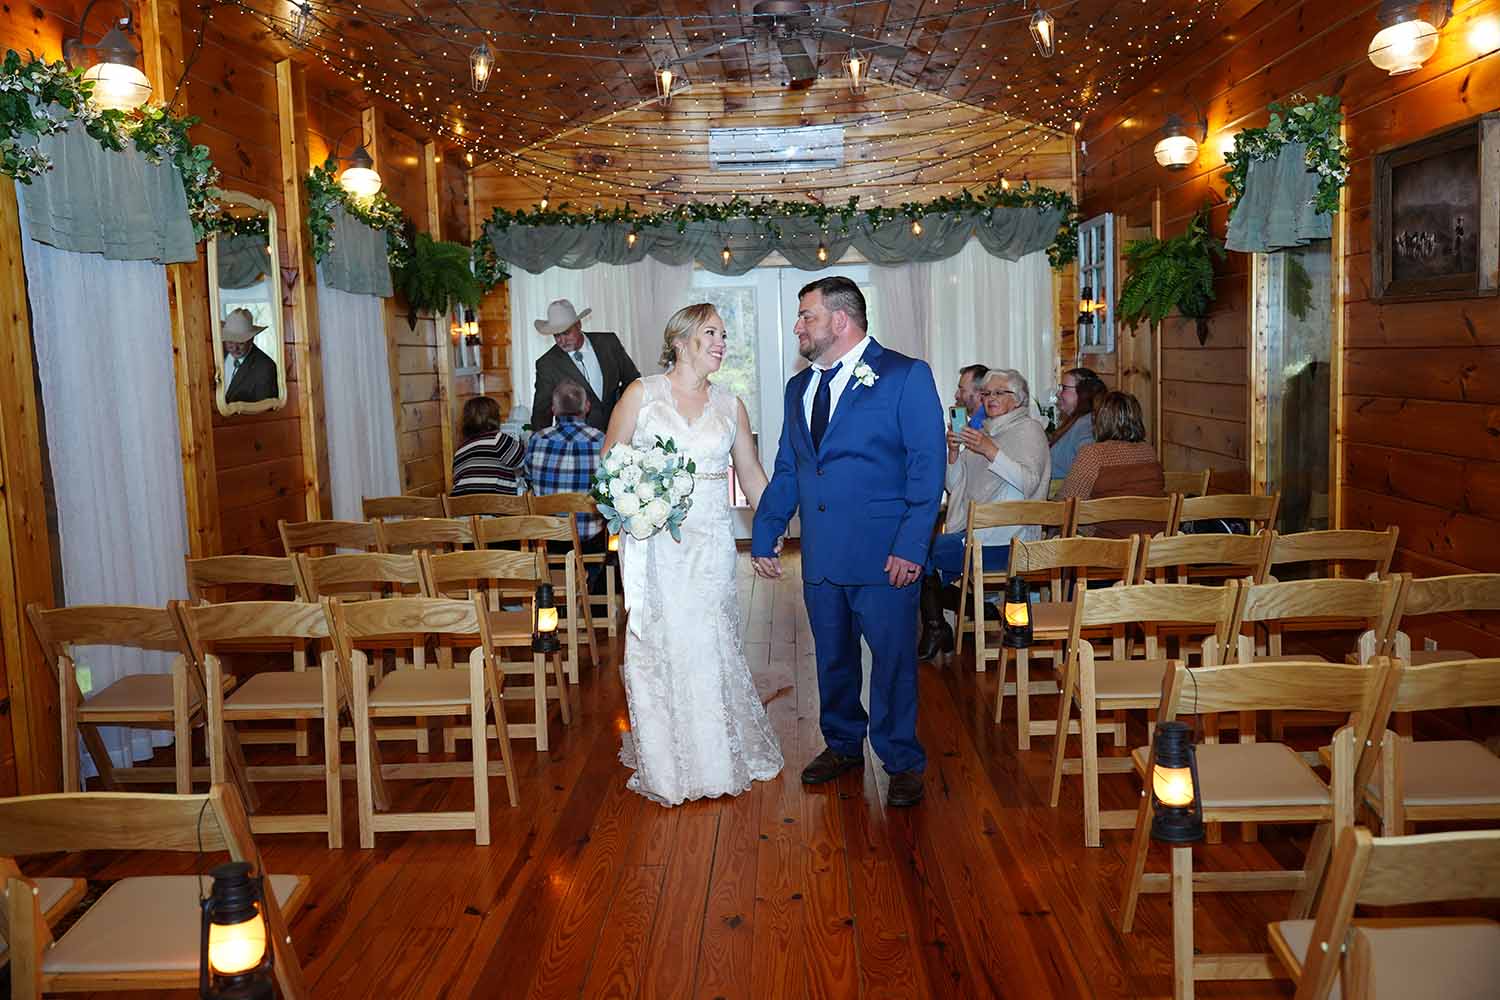 Wedding Chapel Ceremony exit-1001